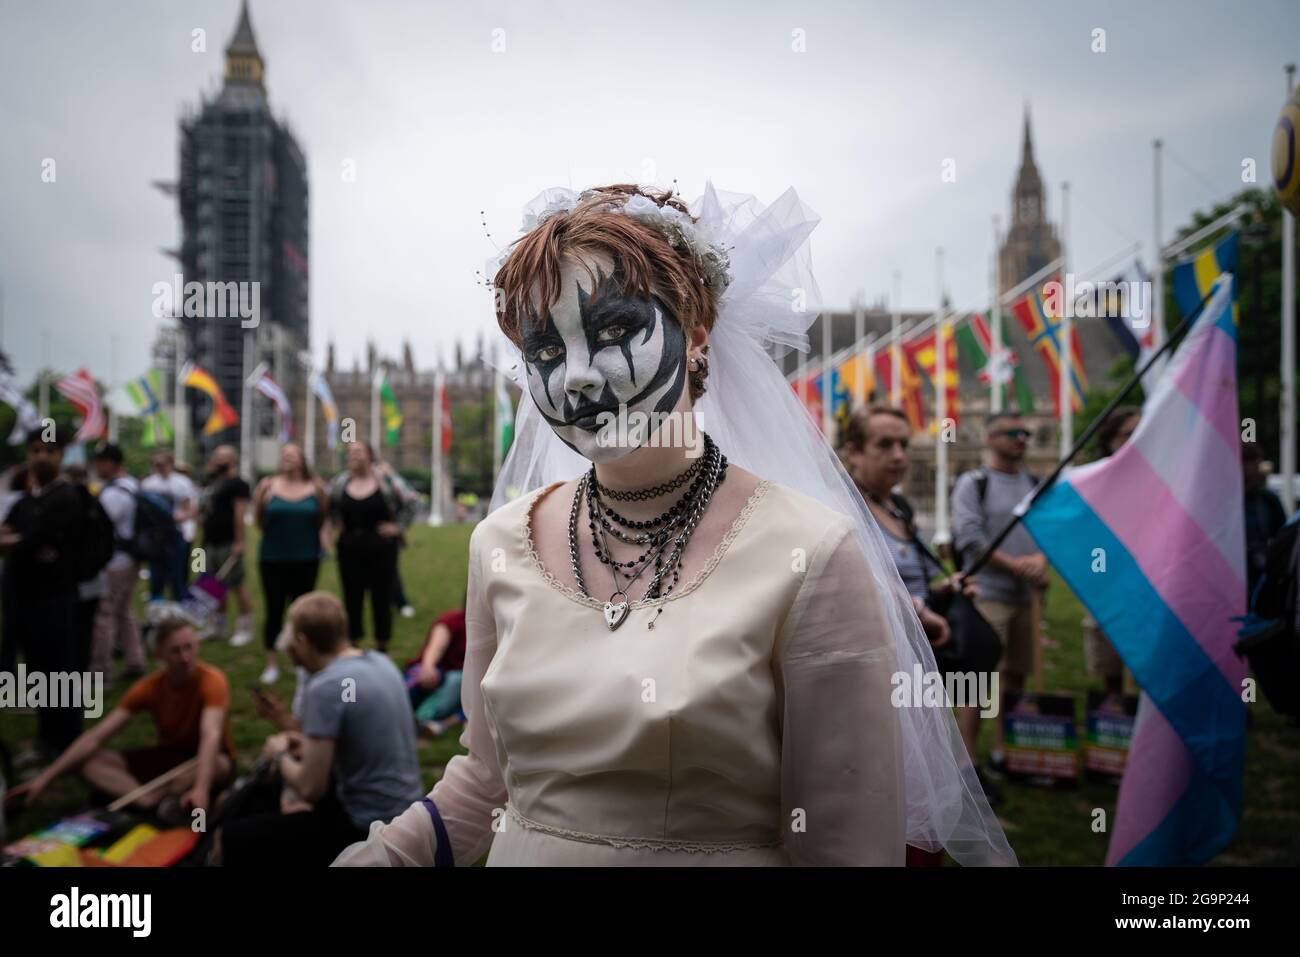 La Marche de la fierté de récupération sur la place du Parlement voit des milliers de personnes manifester contre les inégalités dans la communauté LGBT+. Londres, Royaume-Uni. Banque D'Images